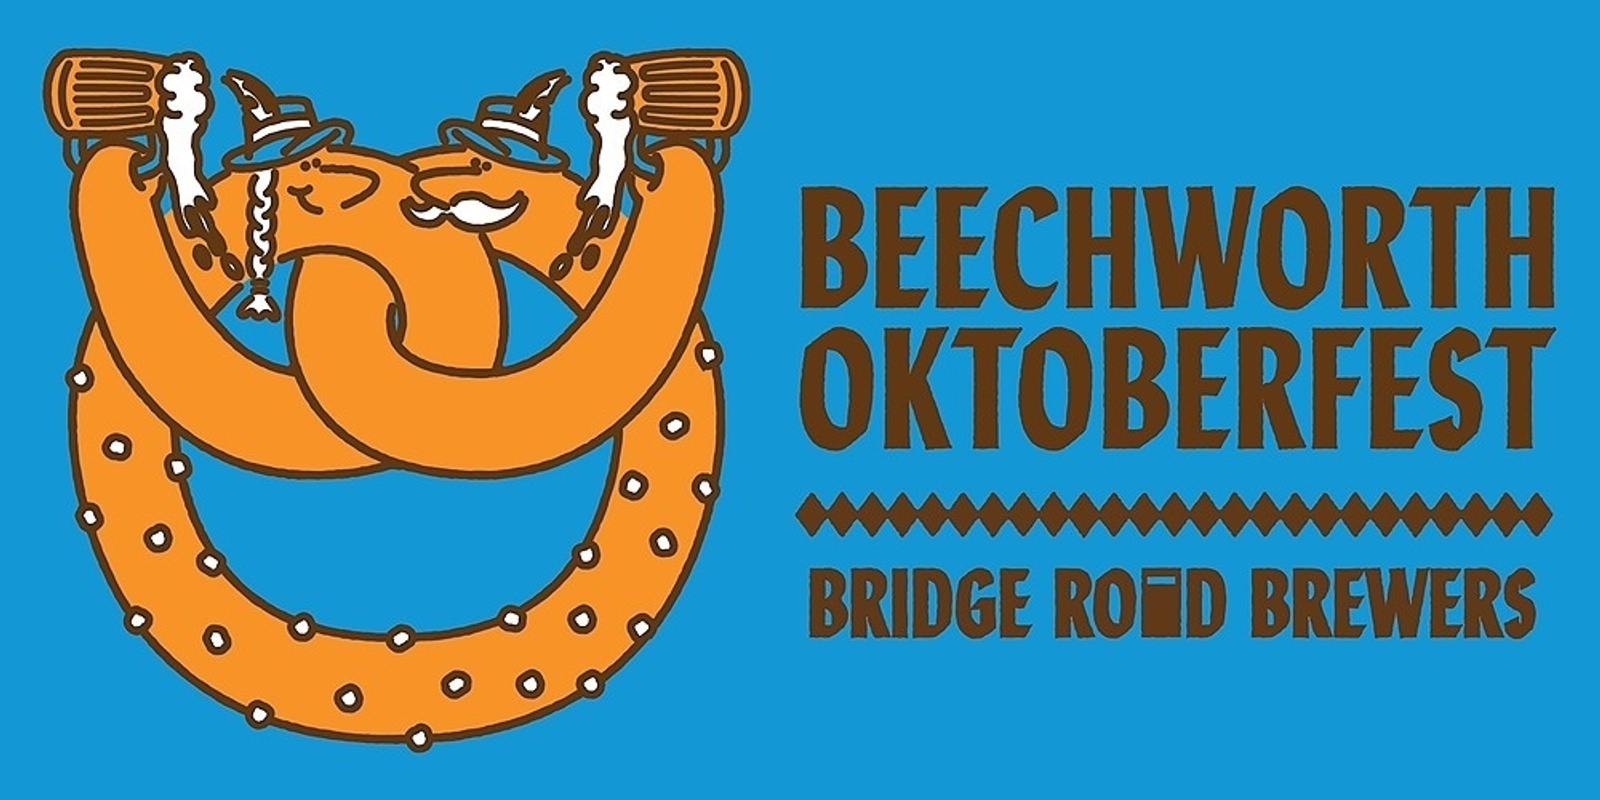 Banner image for Beechworth Oktoberfest 